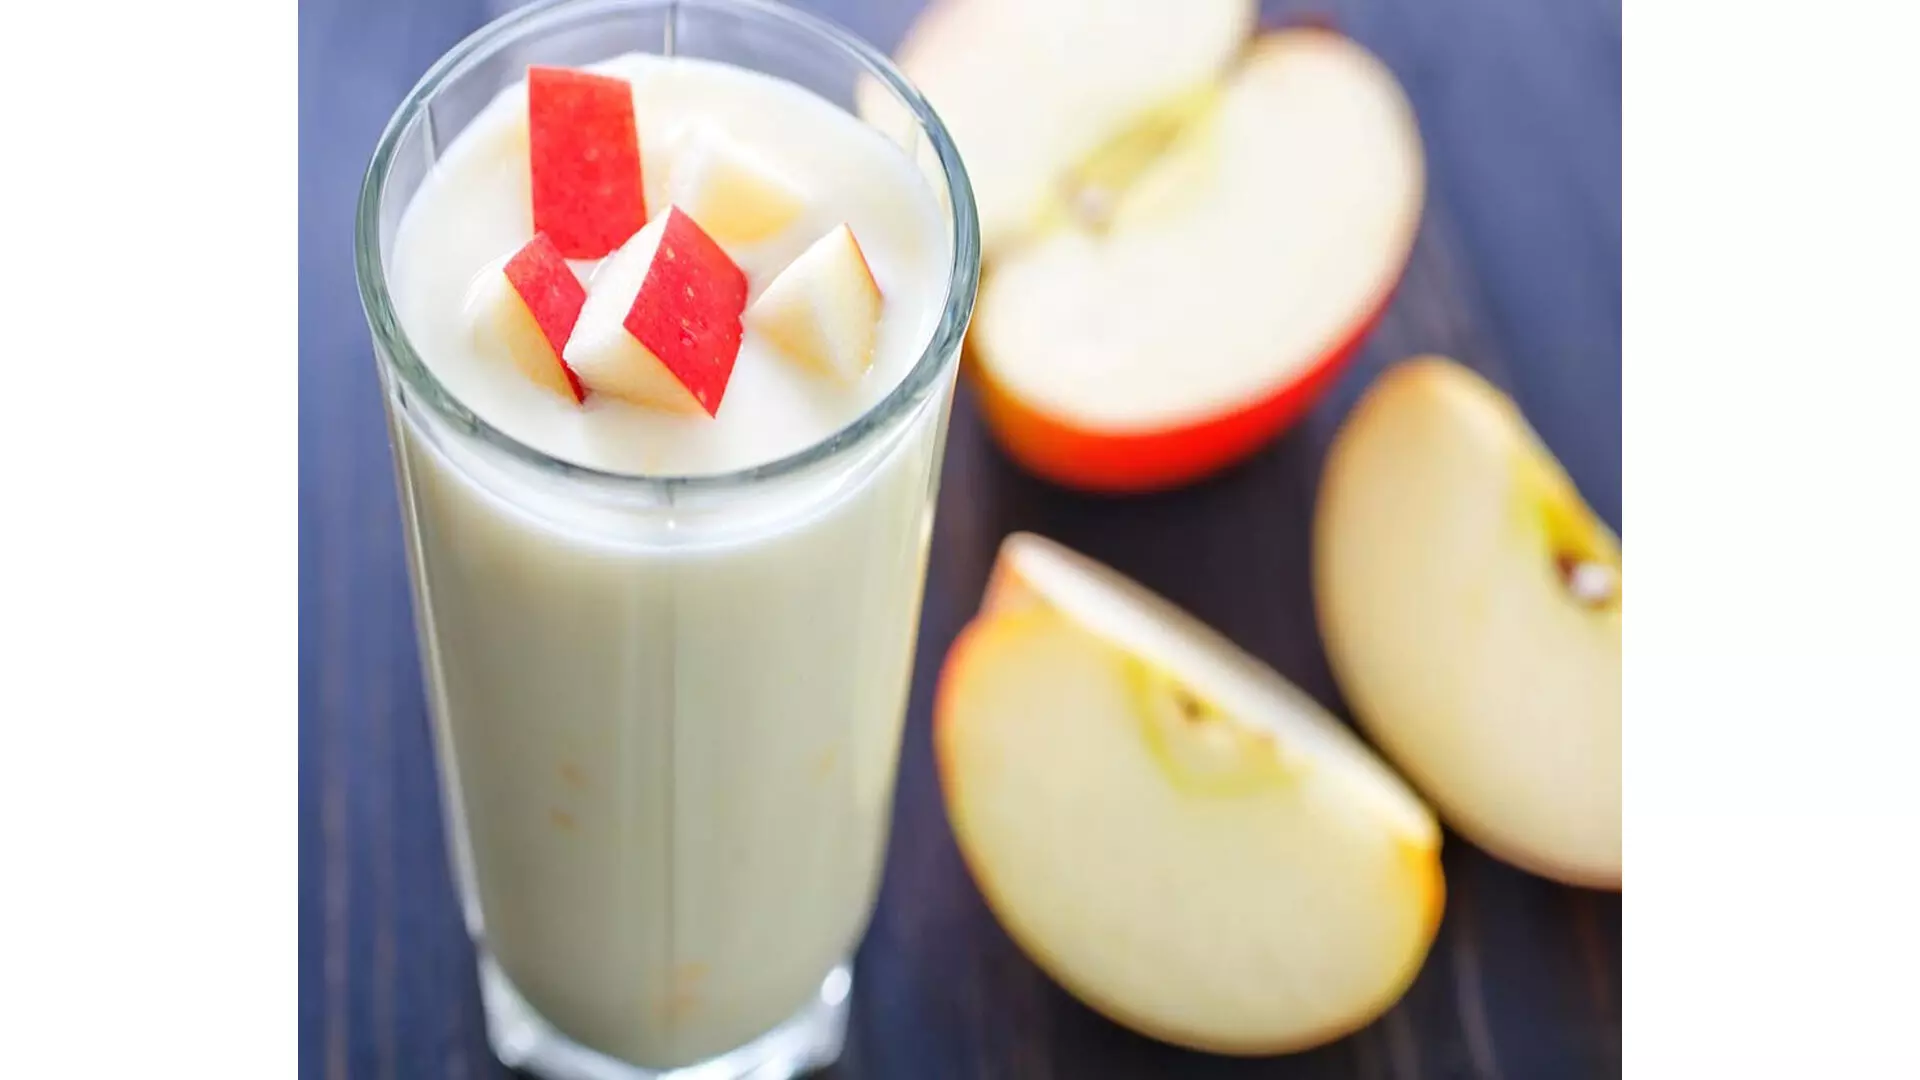 अपनी सुबह की शुरुआत स्वस्थ सेब शेक के साथ करें,व्यंजन विधि